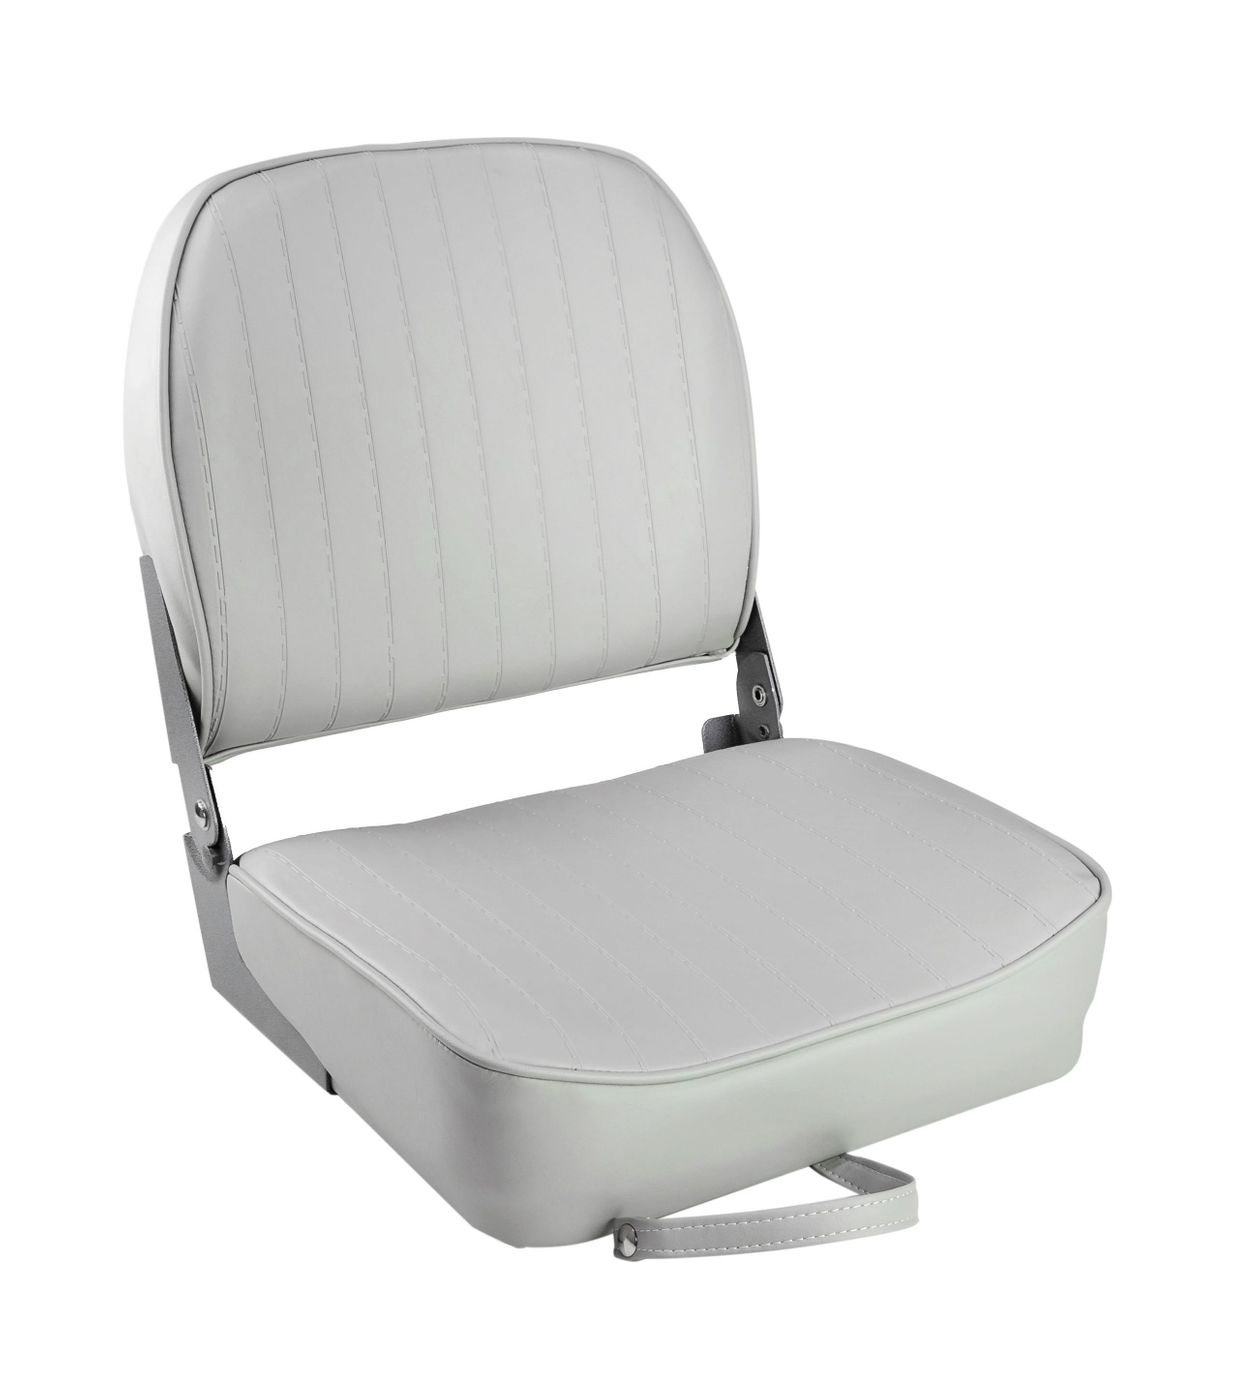 Кресло складное мягкое ECONOMY с низкой спинкой, цвет серый 1040623 кресло складное мягкое economy с высокой спинкой дву ное серый синий 1040661